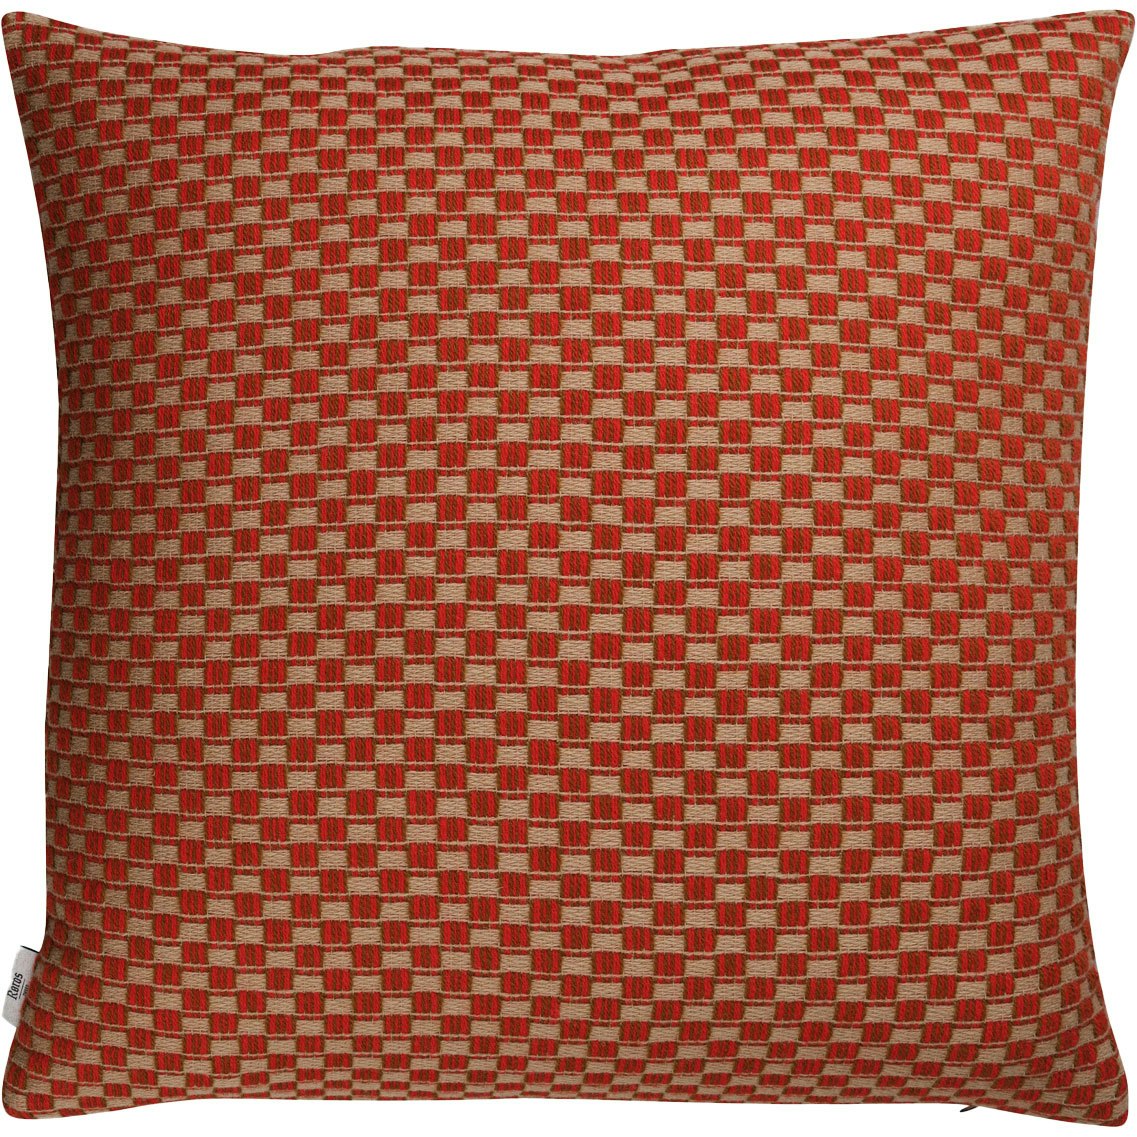 Isak Cushion 60x60 cm, Red Sumac